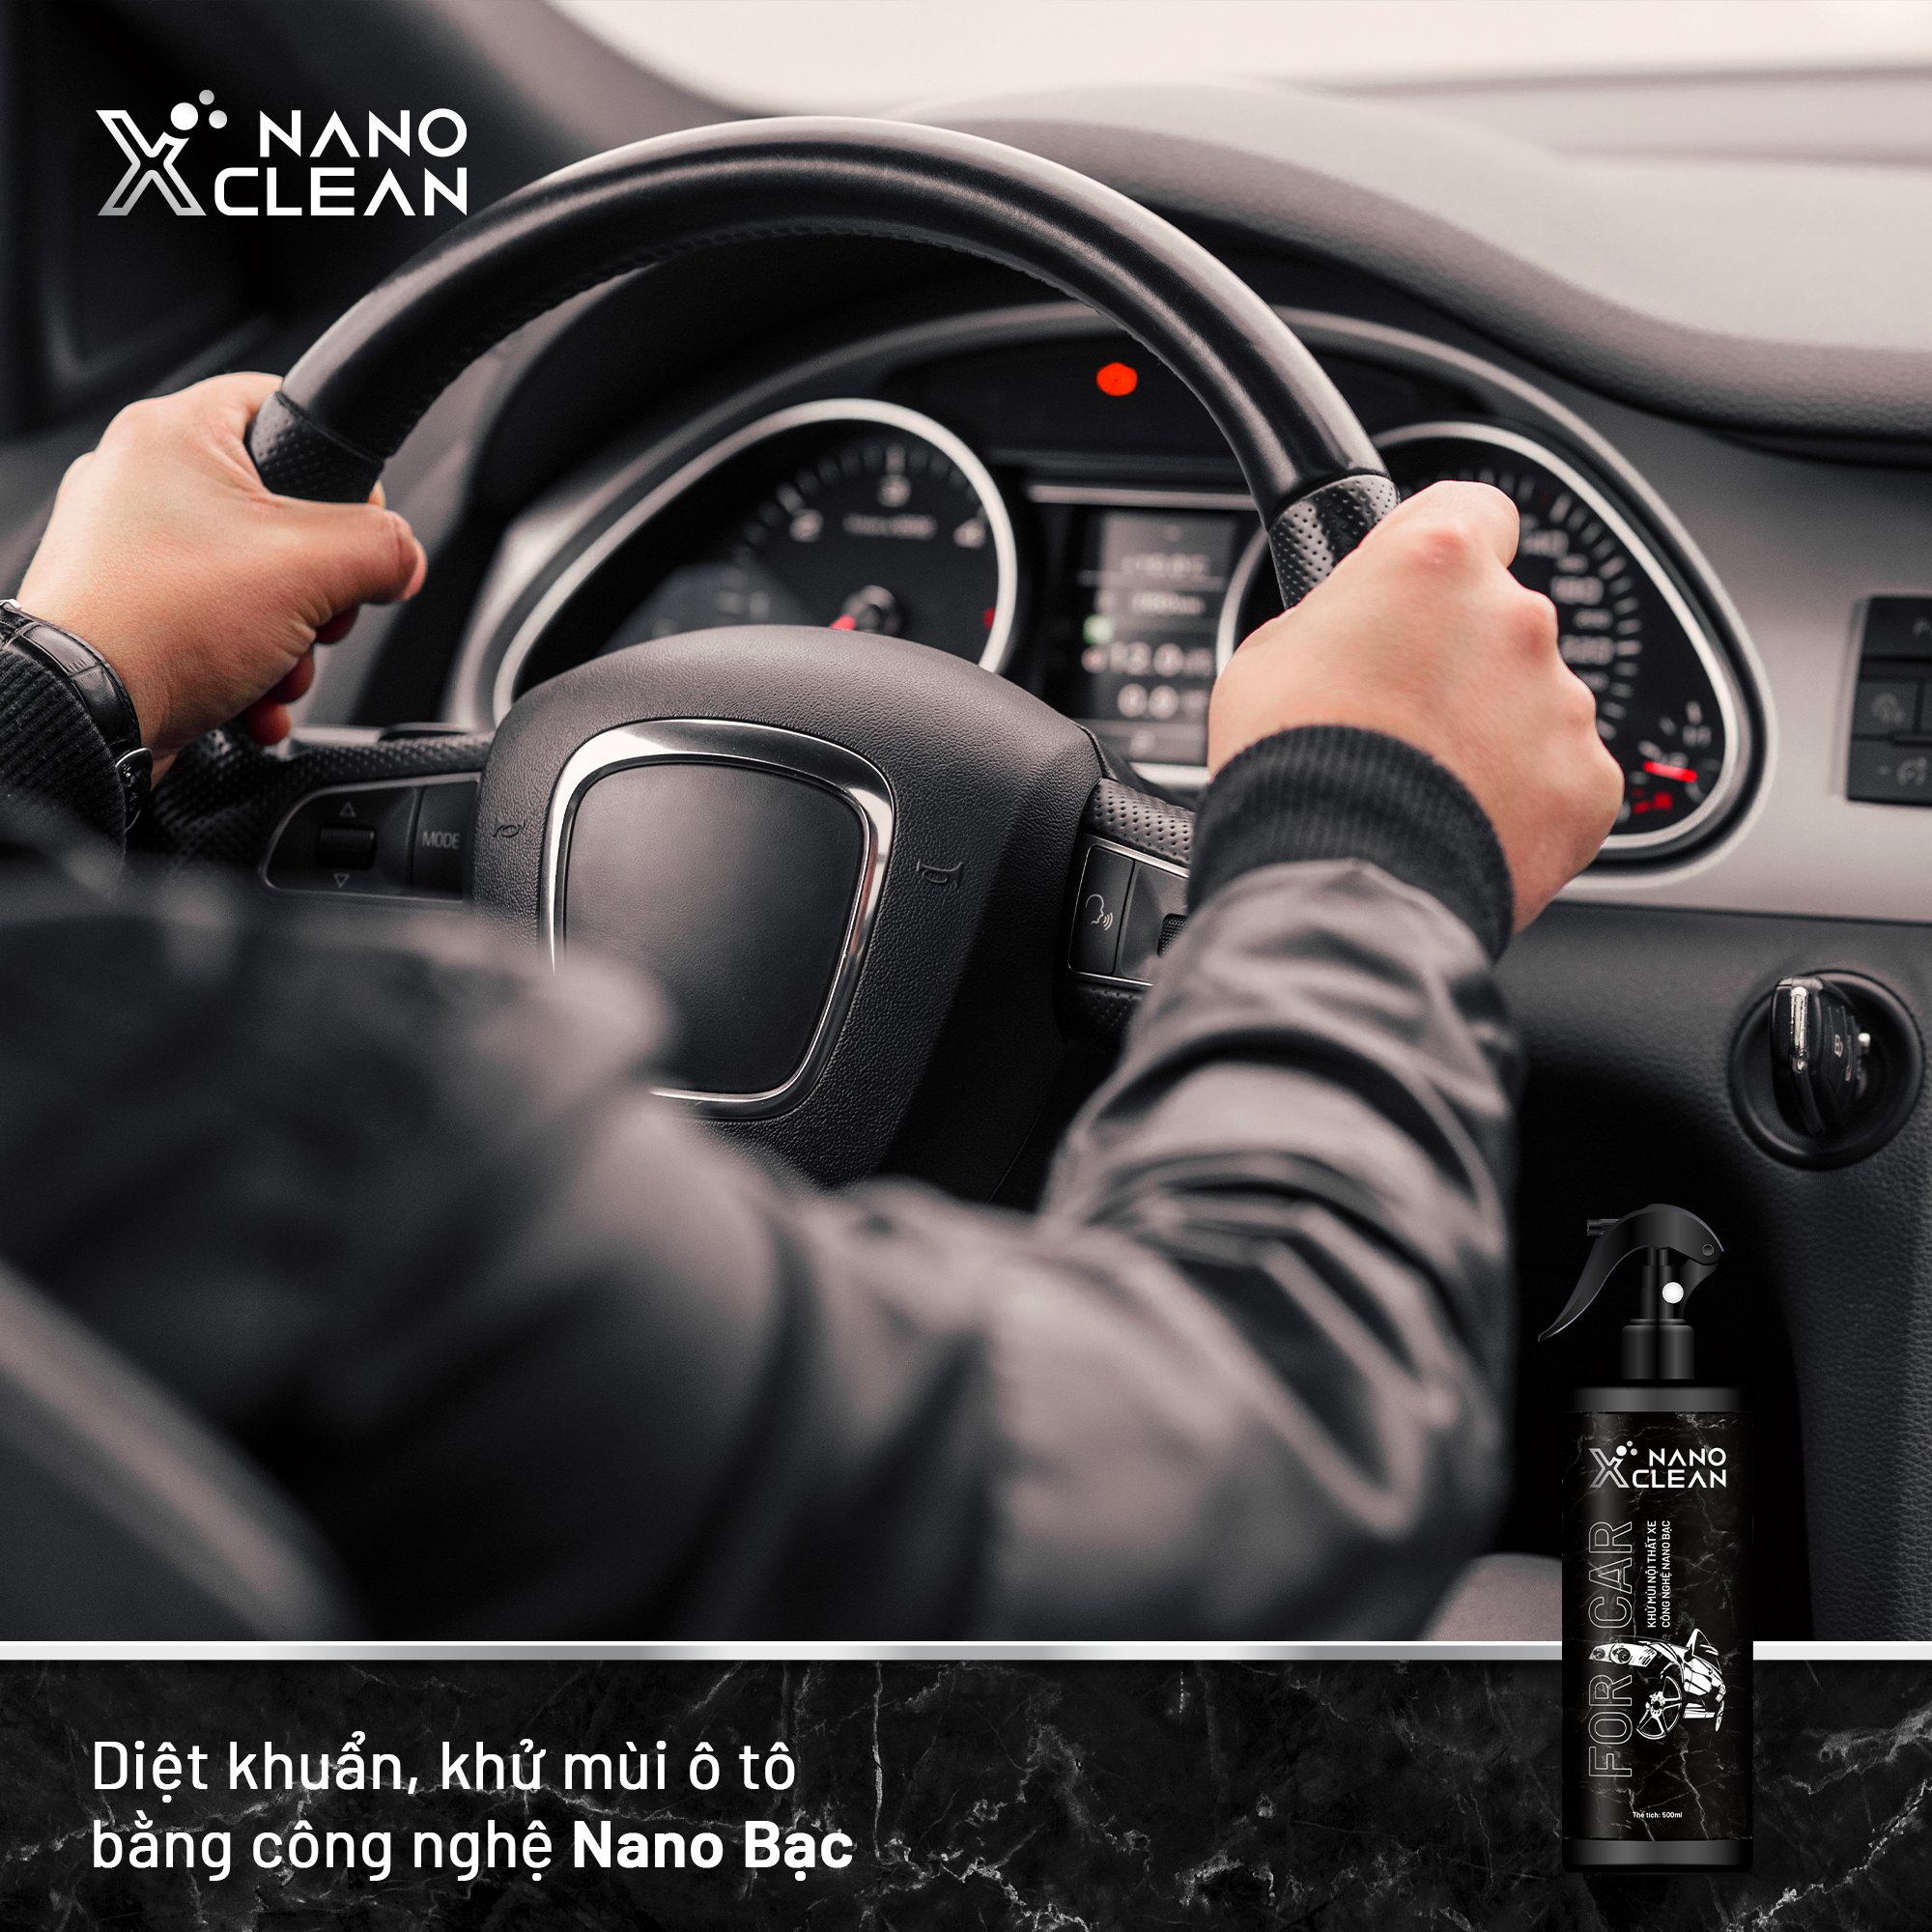 Khử mùi xe ô tô, xe hơi tạo hương thơm nano bạc Nano Xclean For Car 500ML AHT Corp - chai xịt diệt khuẩn khử mùi ô tô, mùi hải sản, mùi ẩm mốc, mùi hôi khó chịu không gian nội thất xe hơi - công nghệ nano an toàn, thân thiện